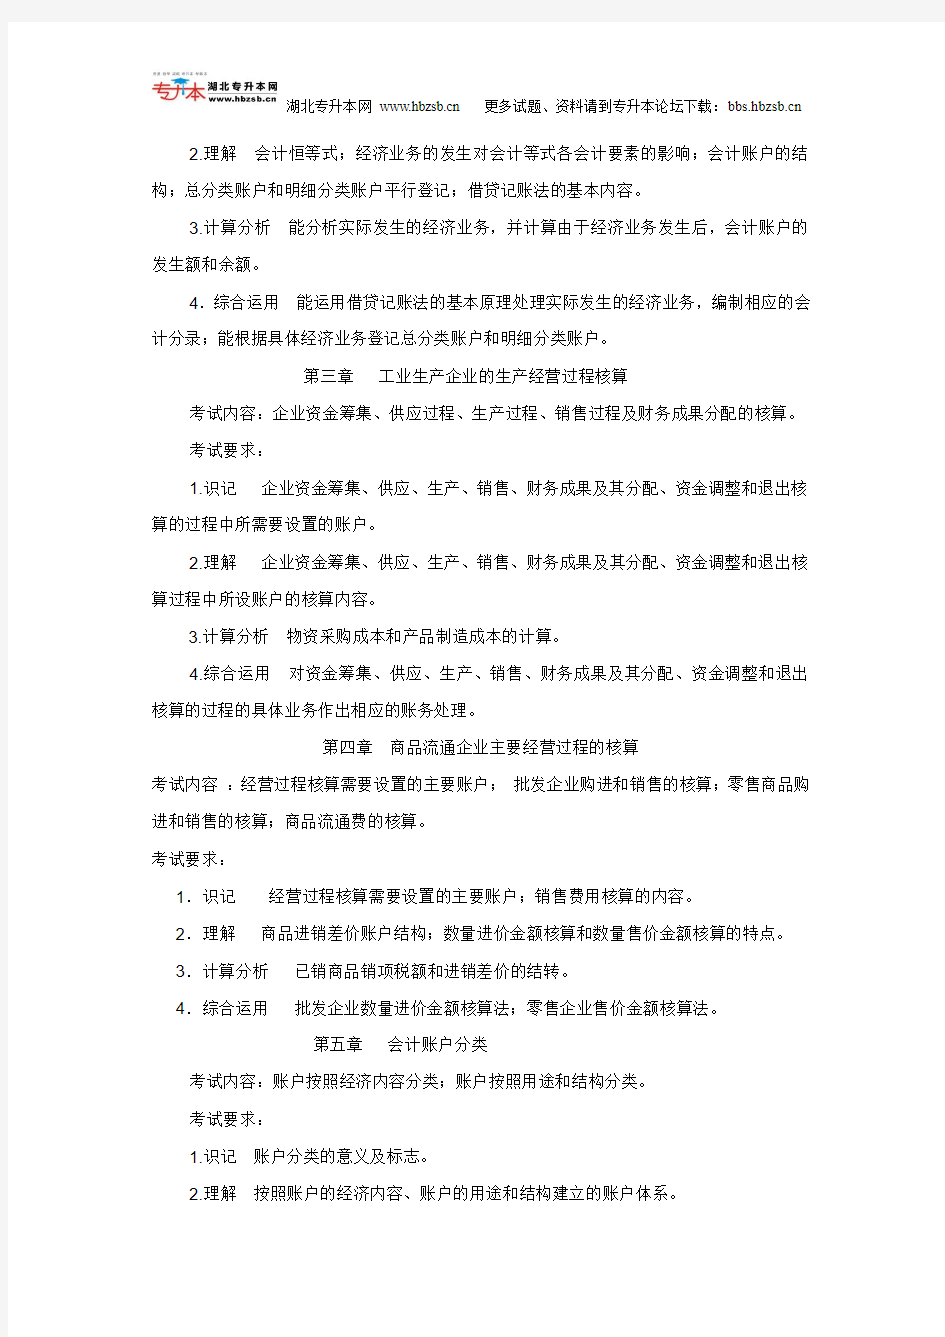 武汉工程大学2011年专升本《会计学原理》考试大纲